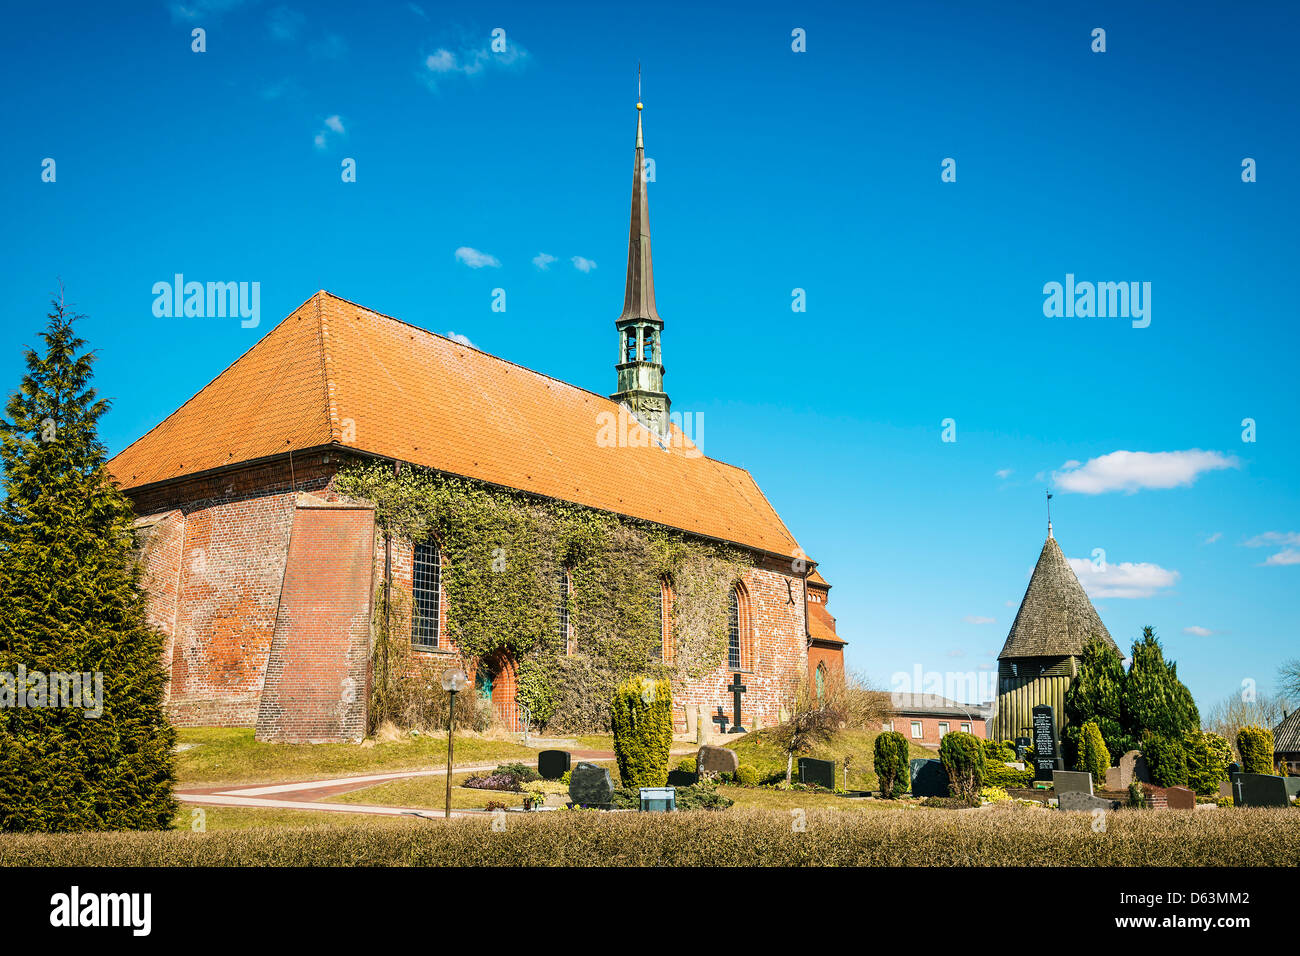 L'église en brique rouge et le cimetière les jours de soleil au printemps dans le village Witzwort, Allemagne Banque D'Images